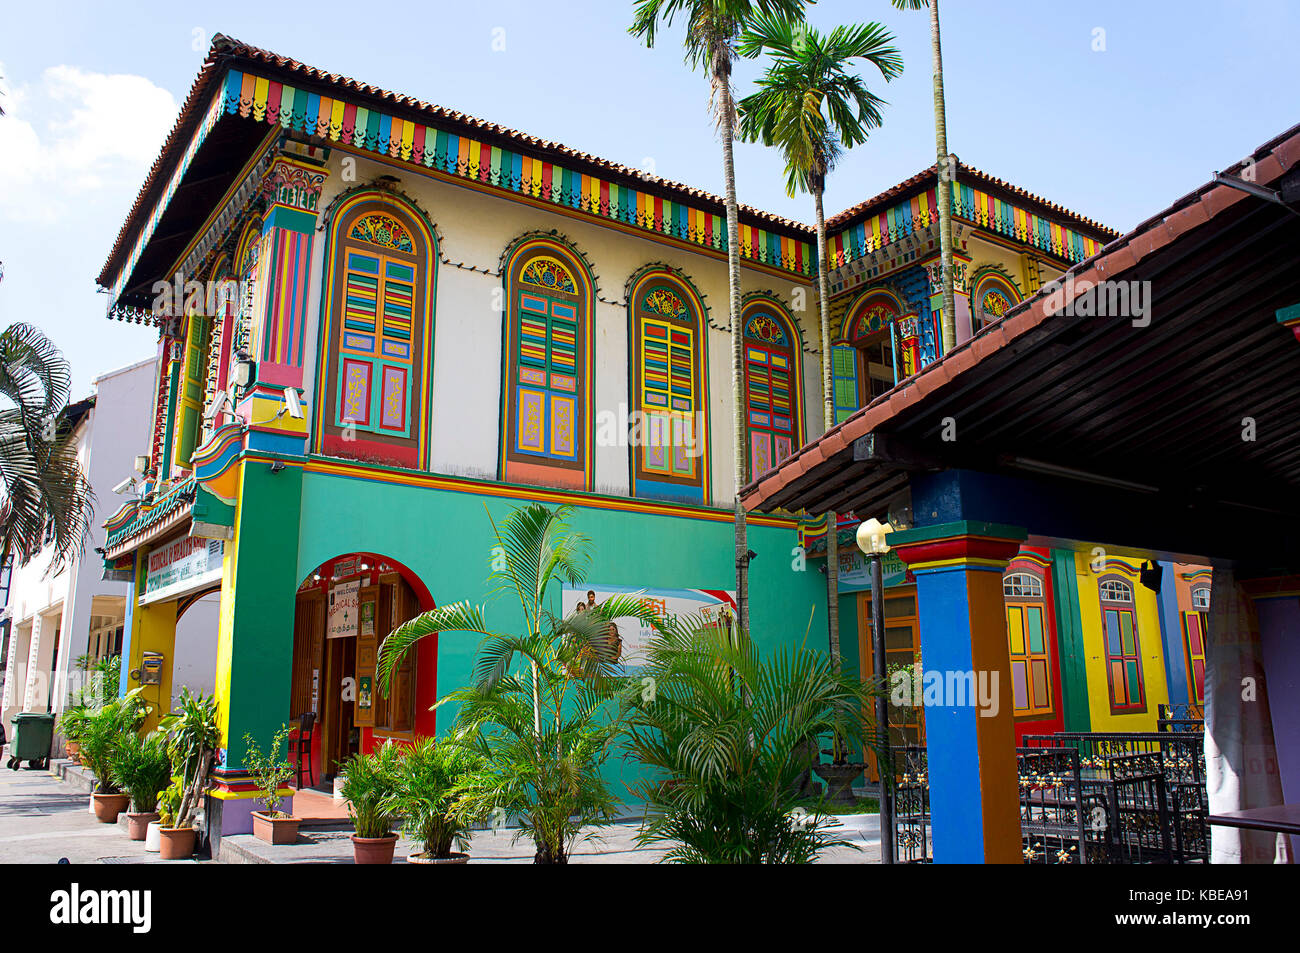 Farbenfrohe Gebäudefassade in Little India, Zentrum der großen indischen Gemeinde der Stadt und einer der lebhaftesten Bezirke. Singapur Stockfoto